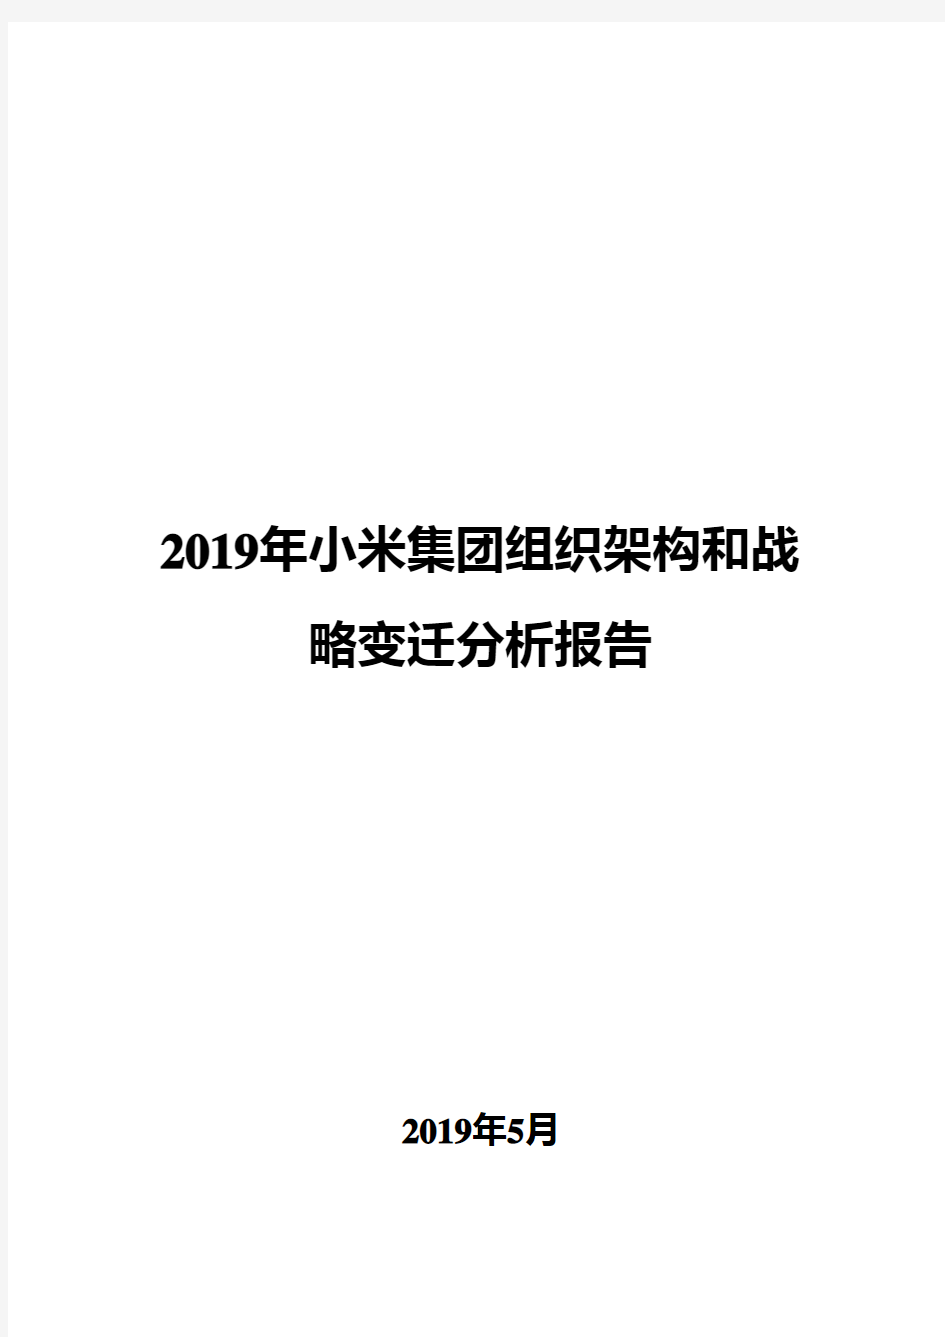 2019年小米集团组织架构和战略变迁分析报告